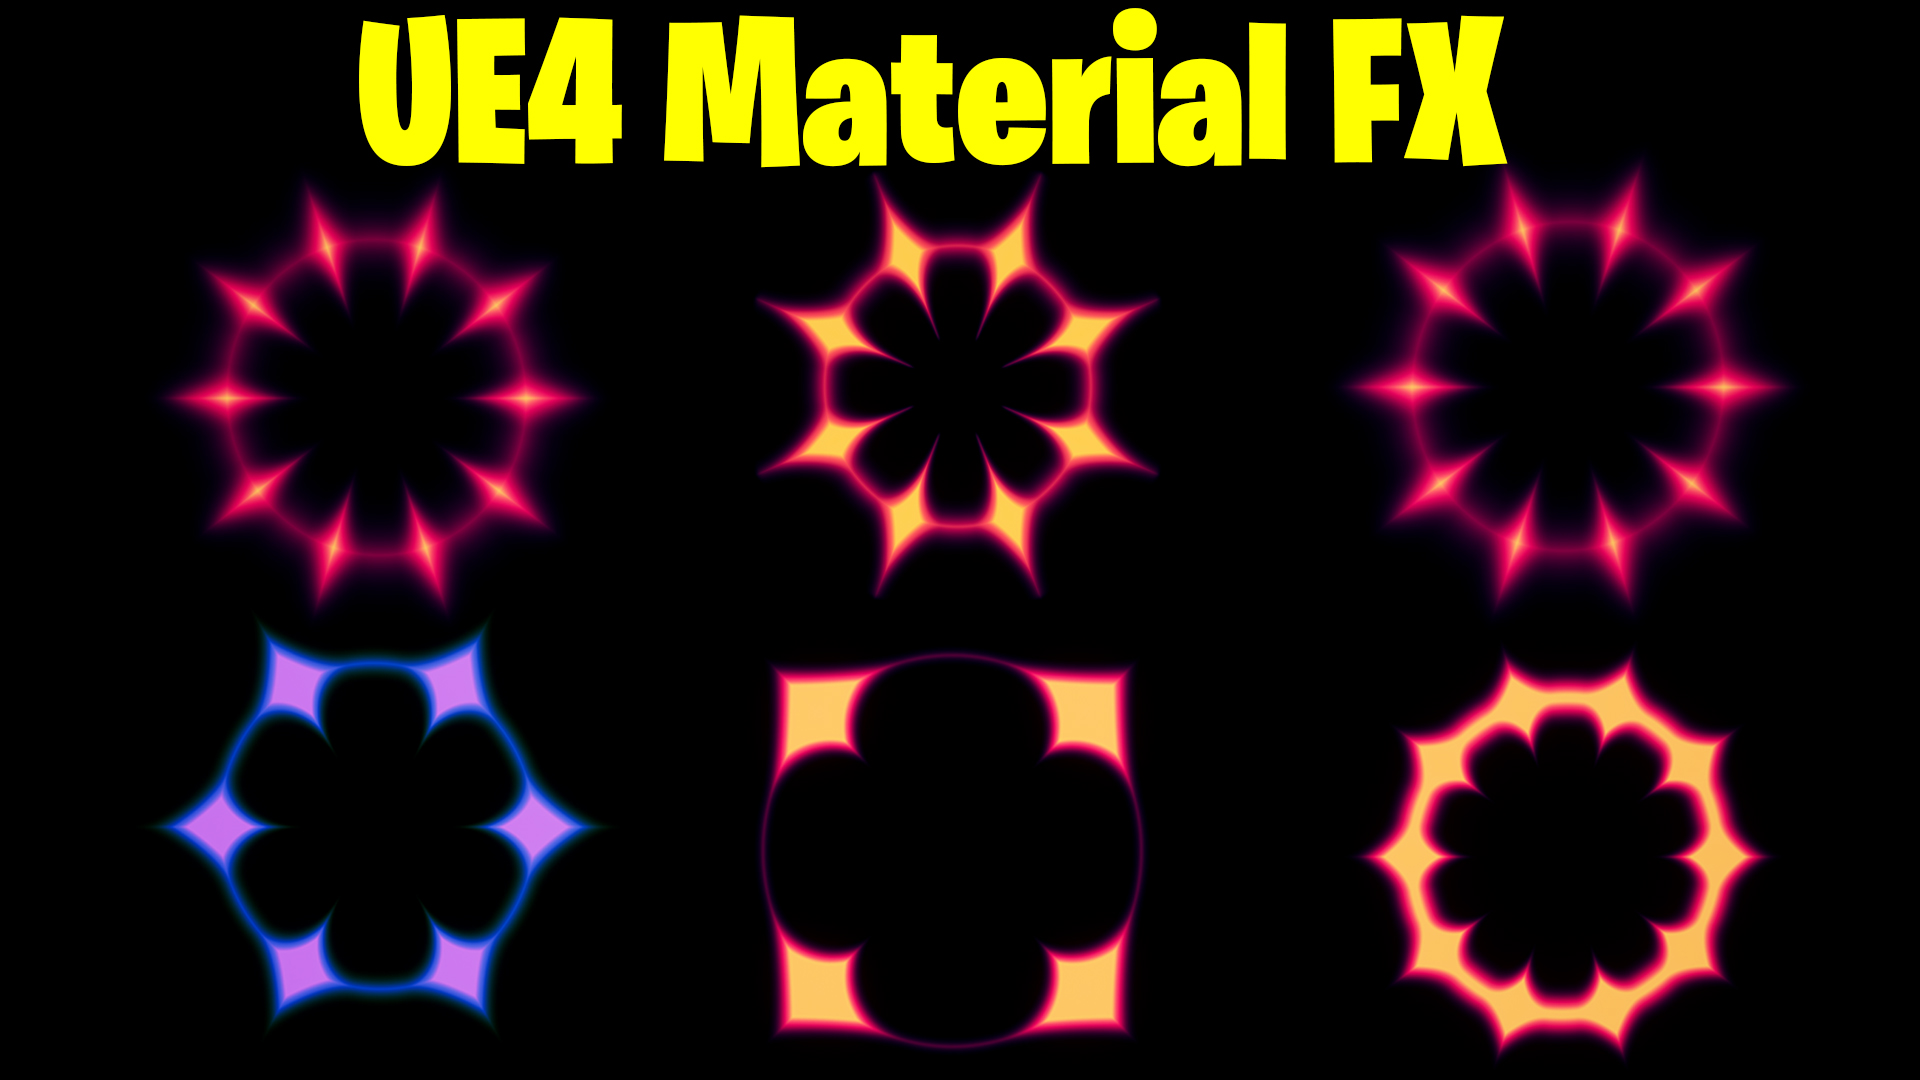 UE4 Material FX Tutorial